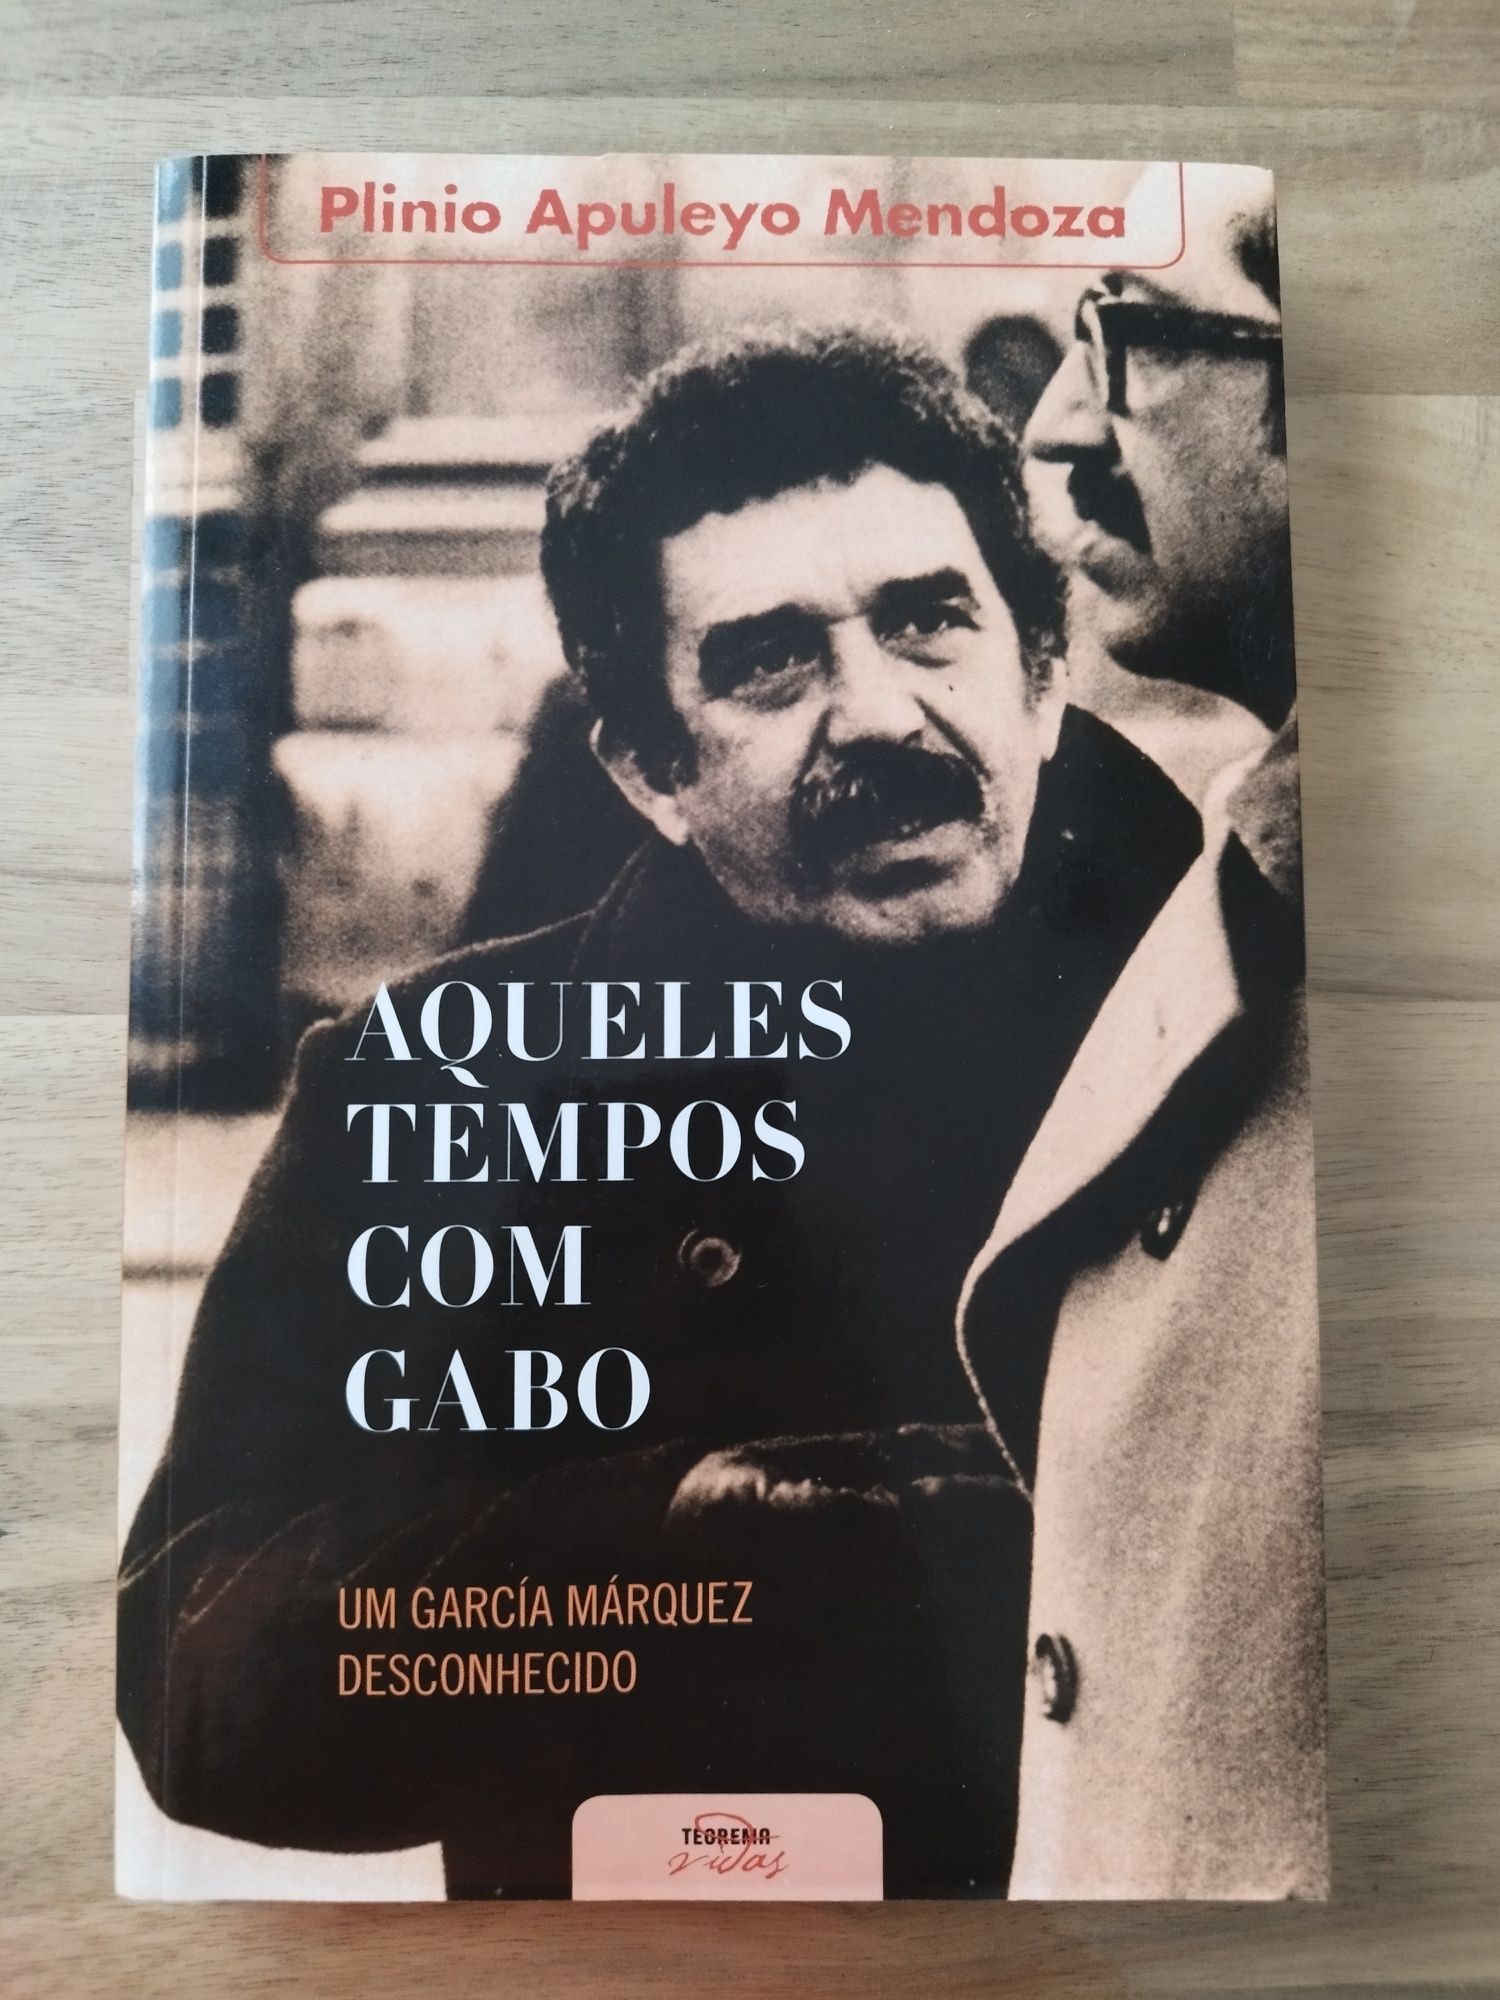 Aqueles Tempos com Gabo -  Plinio Apuleyo de Mendoza